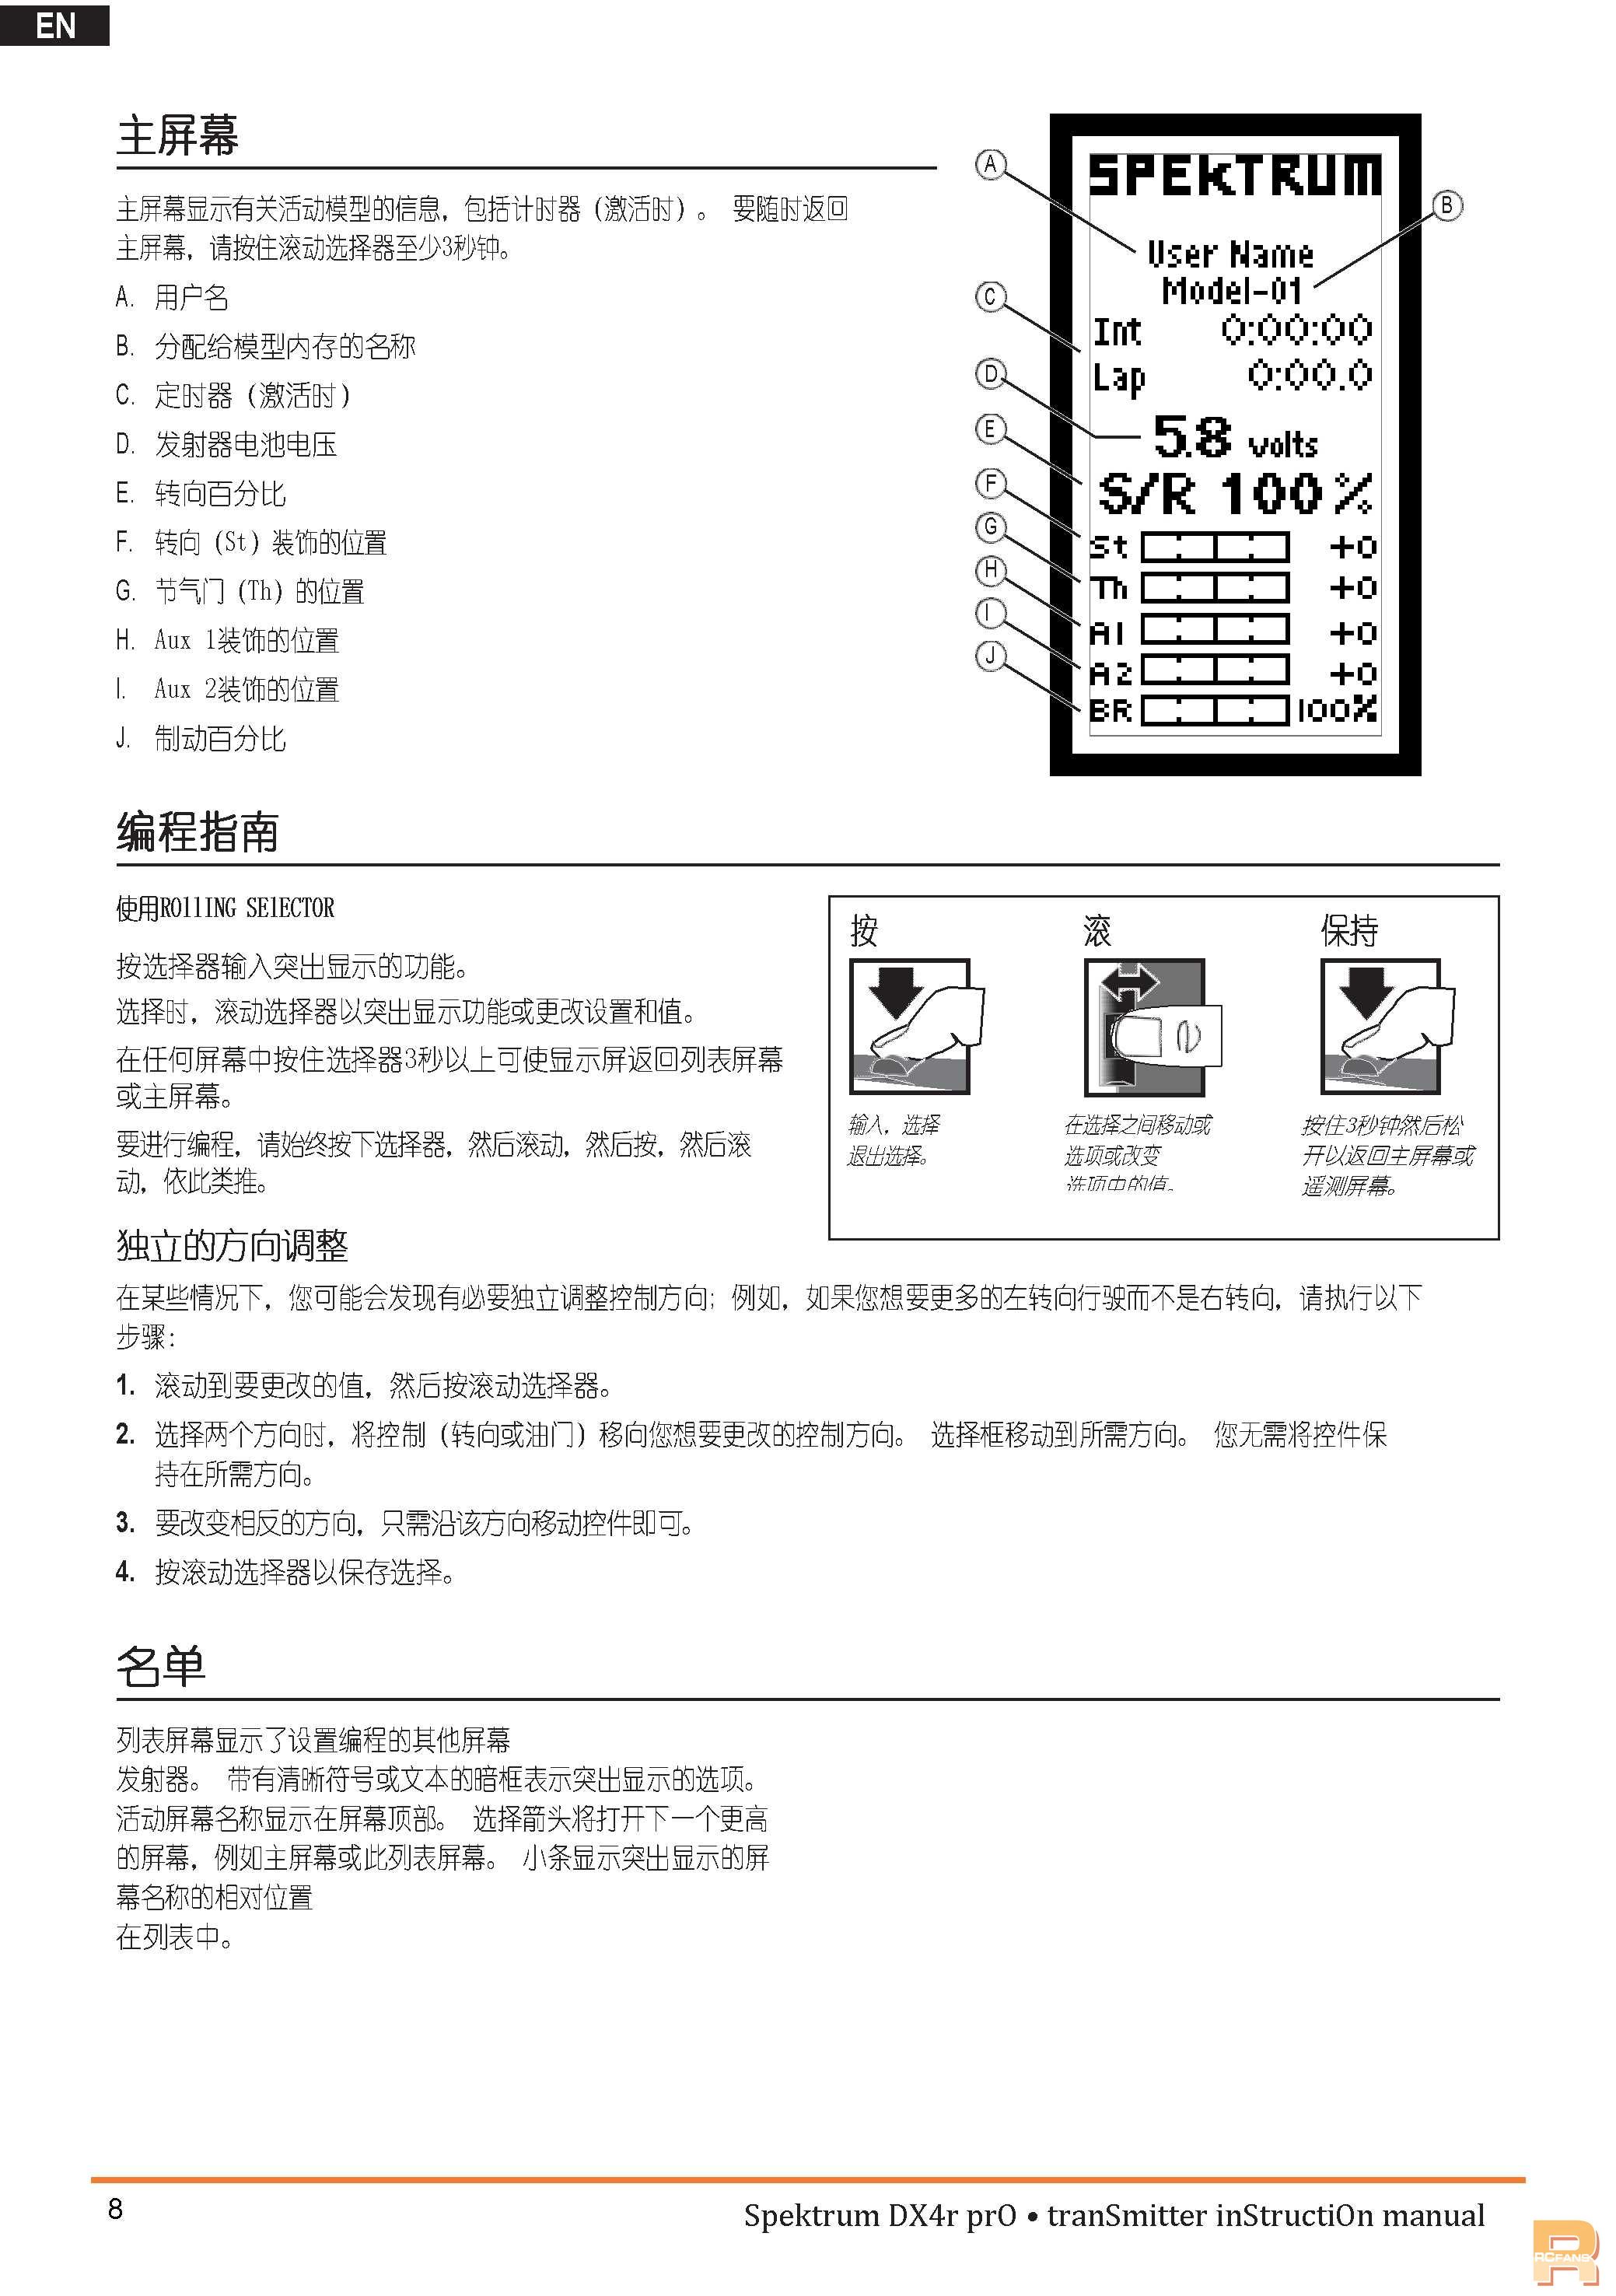 DX4R-ProSPM4100_Manual_EN빷www.fanyigou.com10.jpg